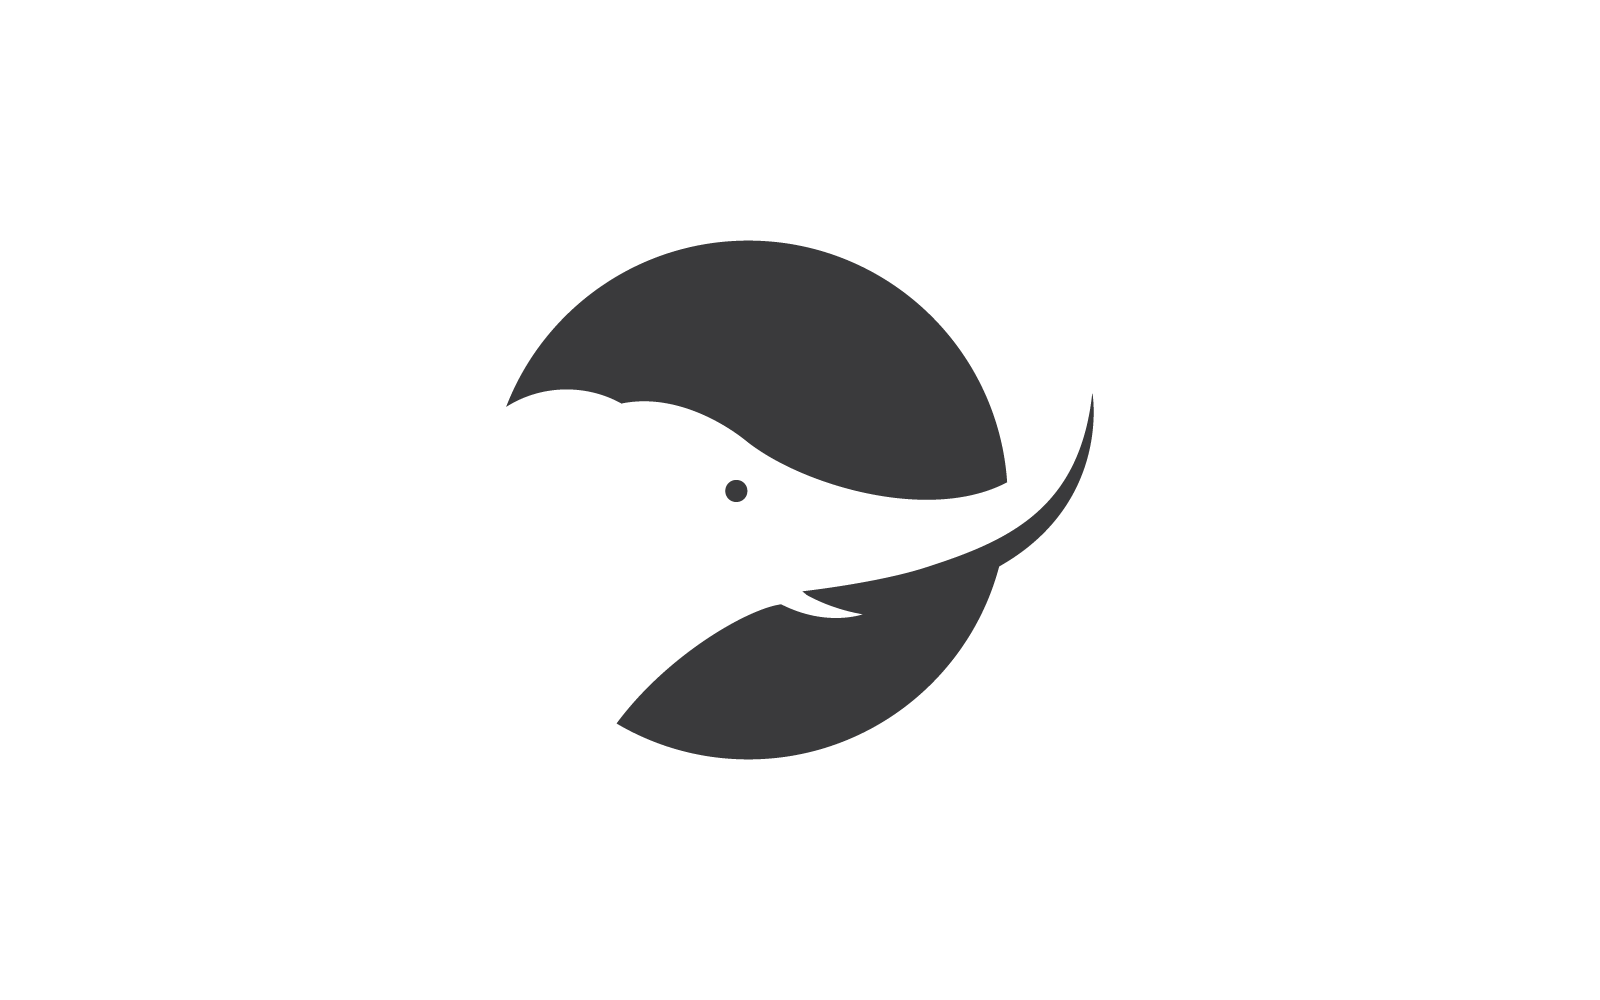 Elephant logo illustration flat design